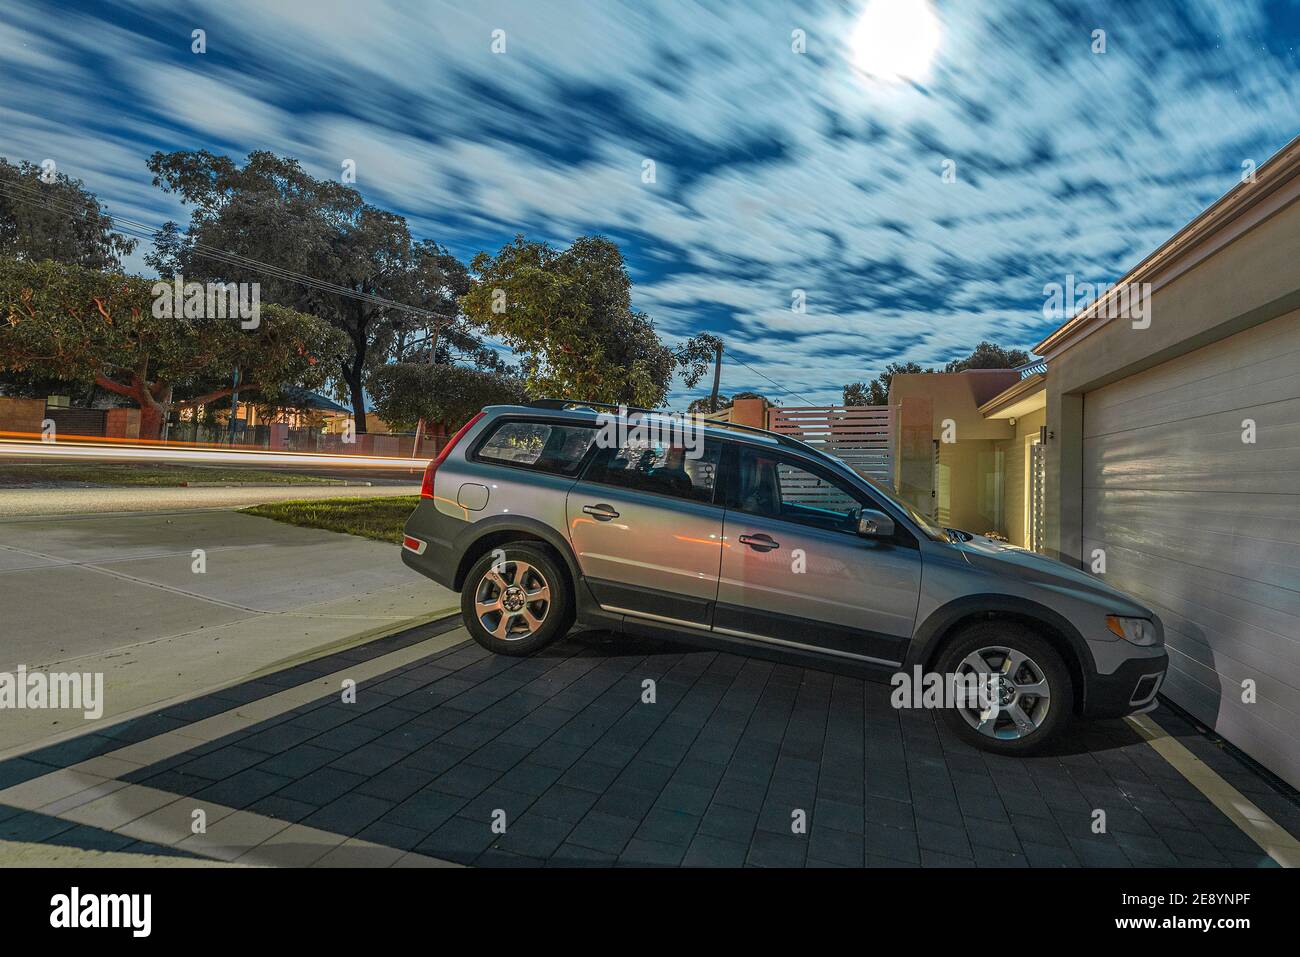 Une exposition nocturne au clair de lune d'une rue australienne moderne, avec une voiture Volvo dans une allée. Banque D'Images